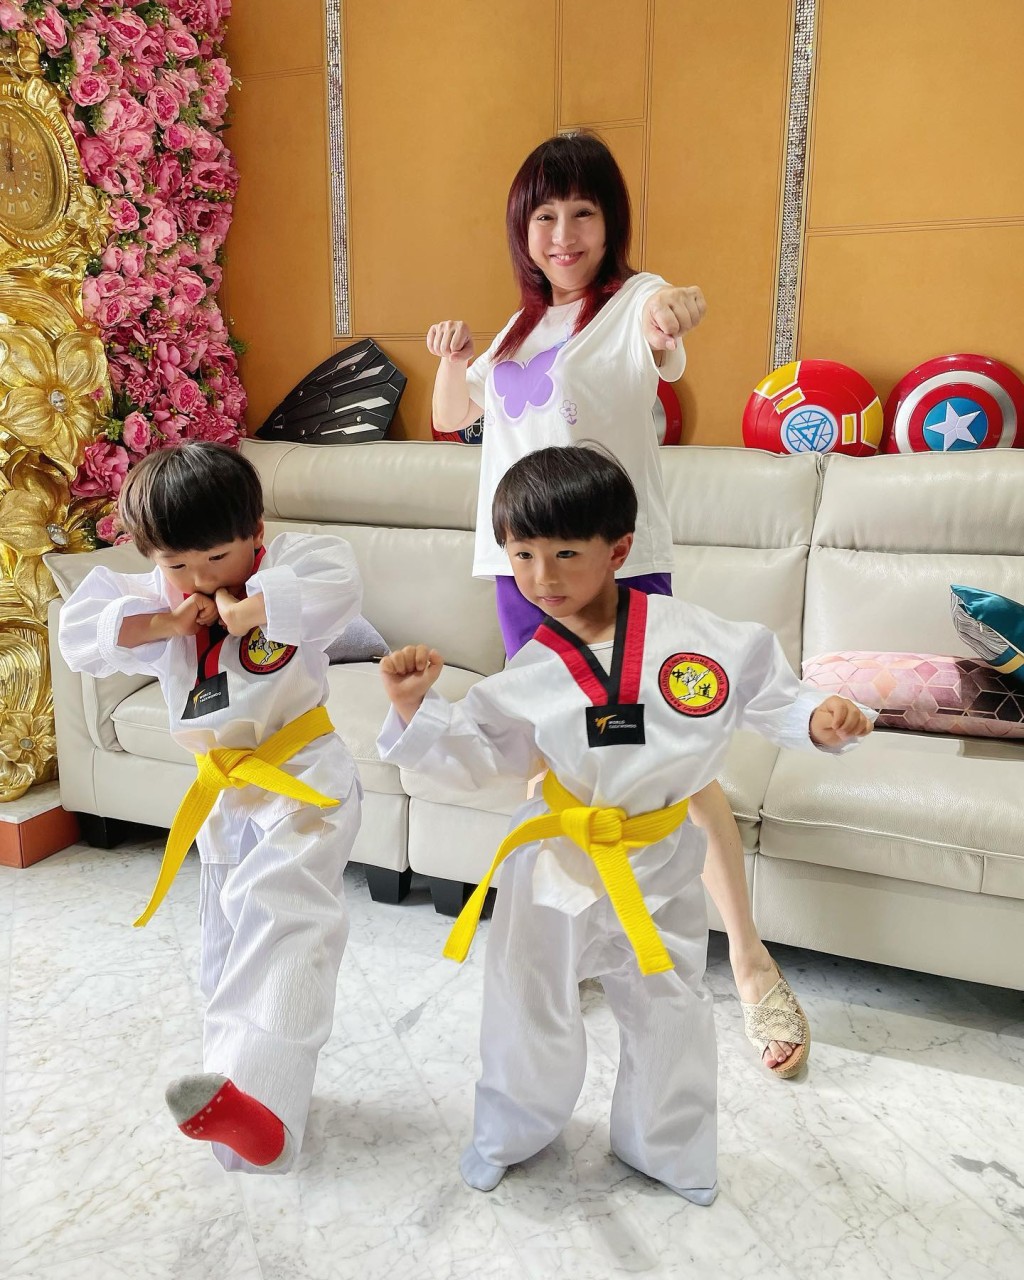 梅小青的孫仔似乎學跆拳道。